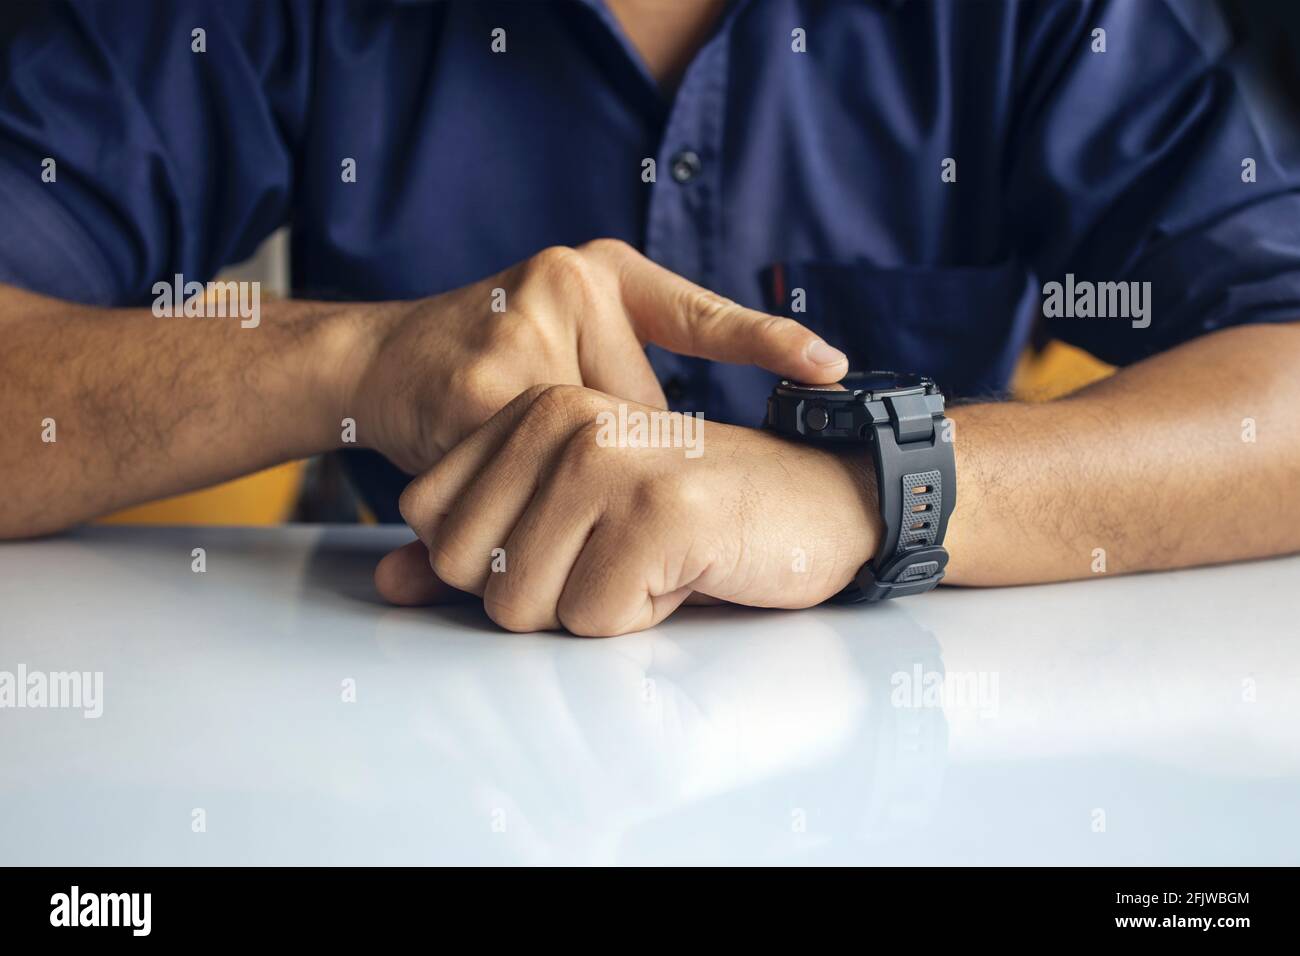 hombre de negocios que lleva puesto un reloj digital inteligente en la pantalla táctil de mano para abrir notificación, leer el mensaje y el dispositivo de seguimiento de actividad en